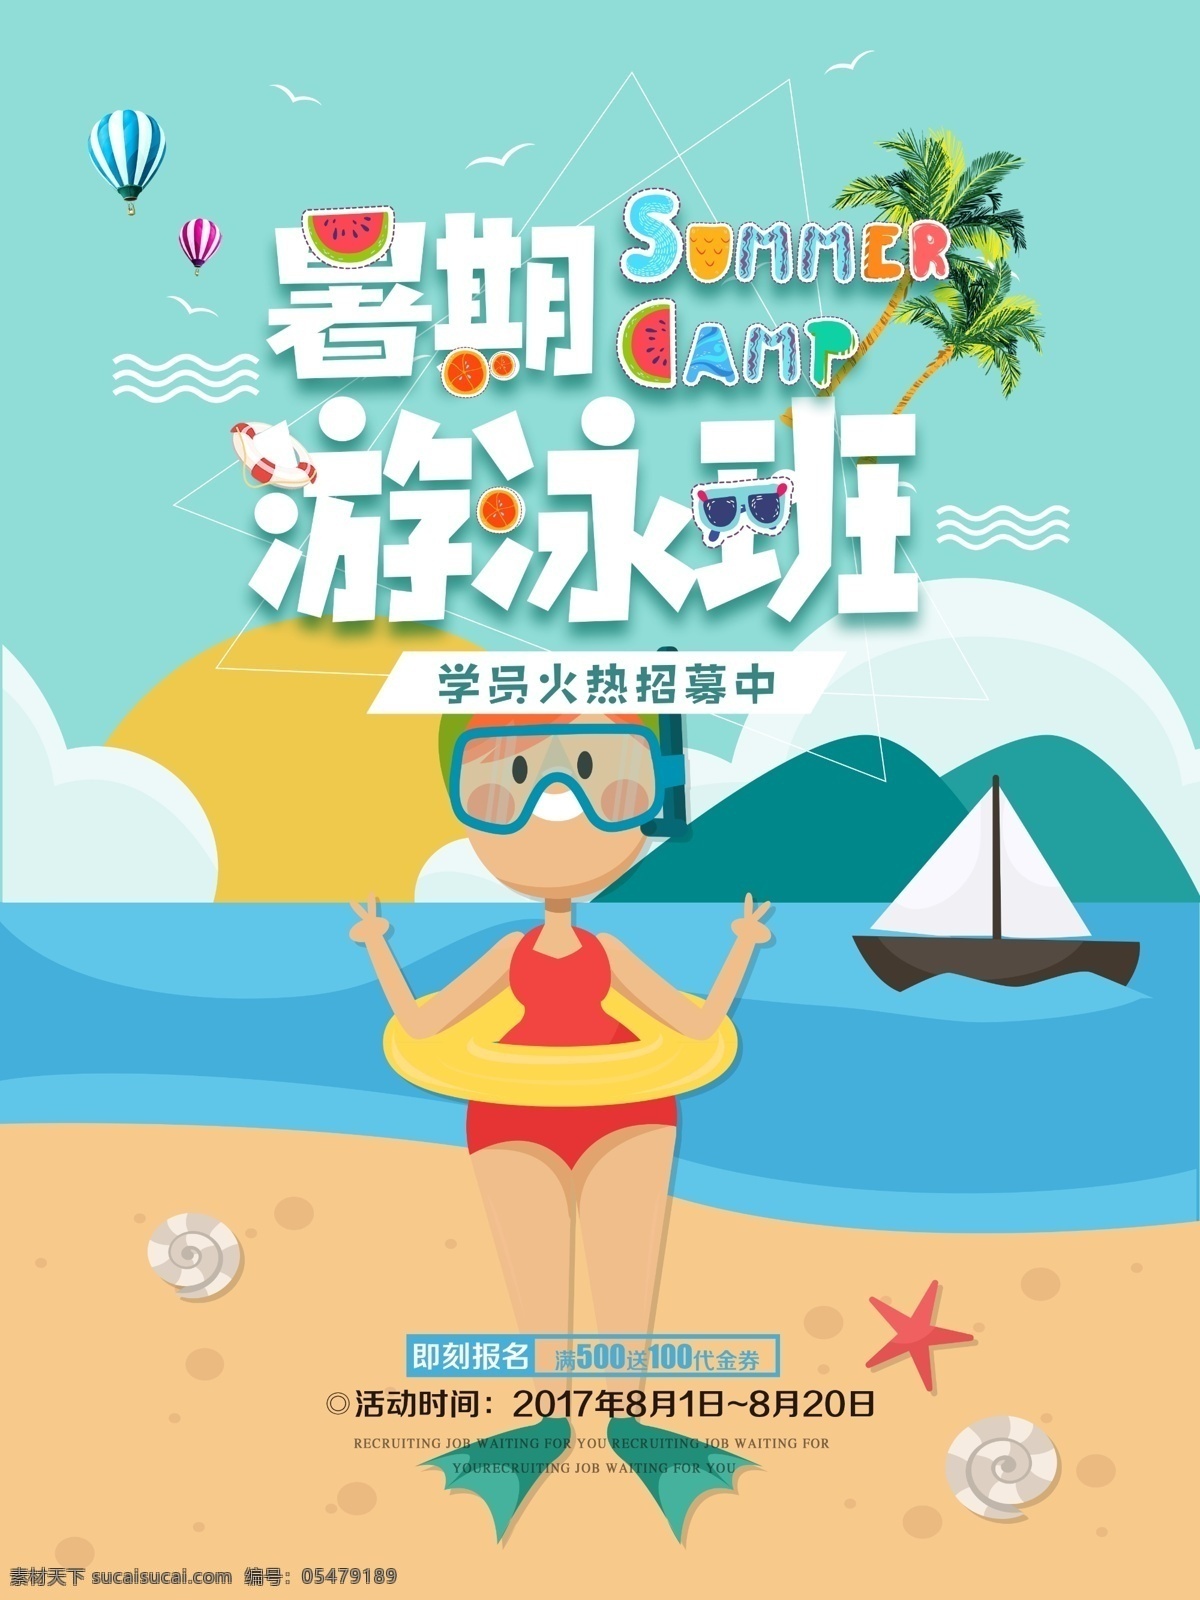 夏日 游泳 班 招生 海报 夏日凉爽 暑期游泳班 卡通 招生海报